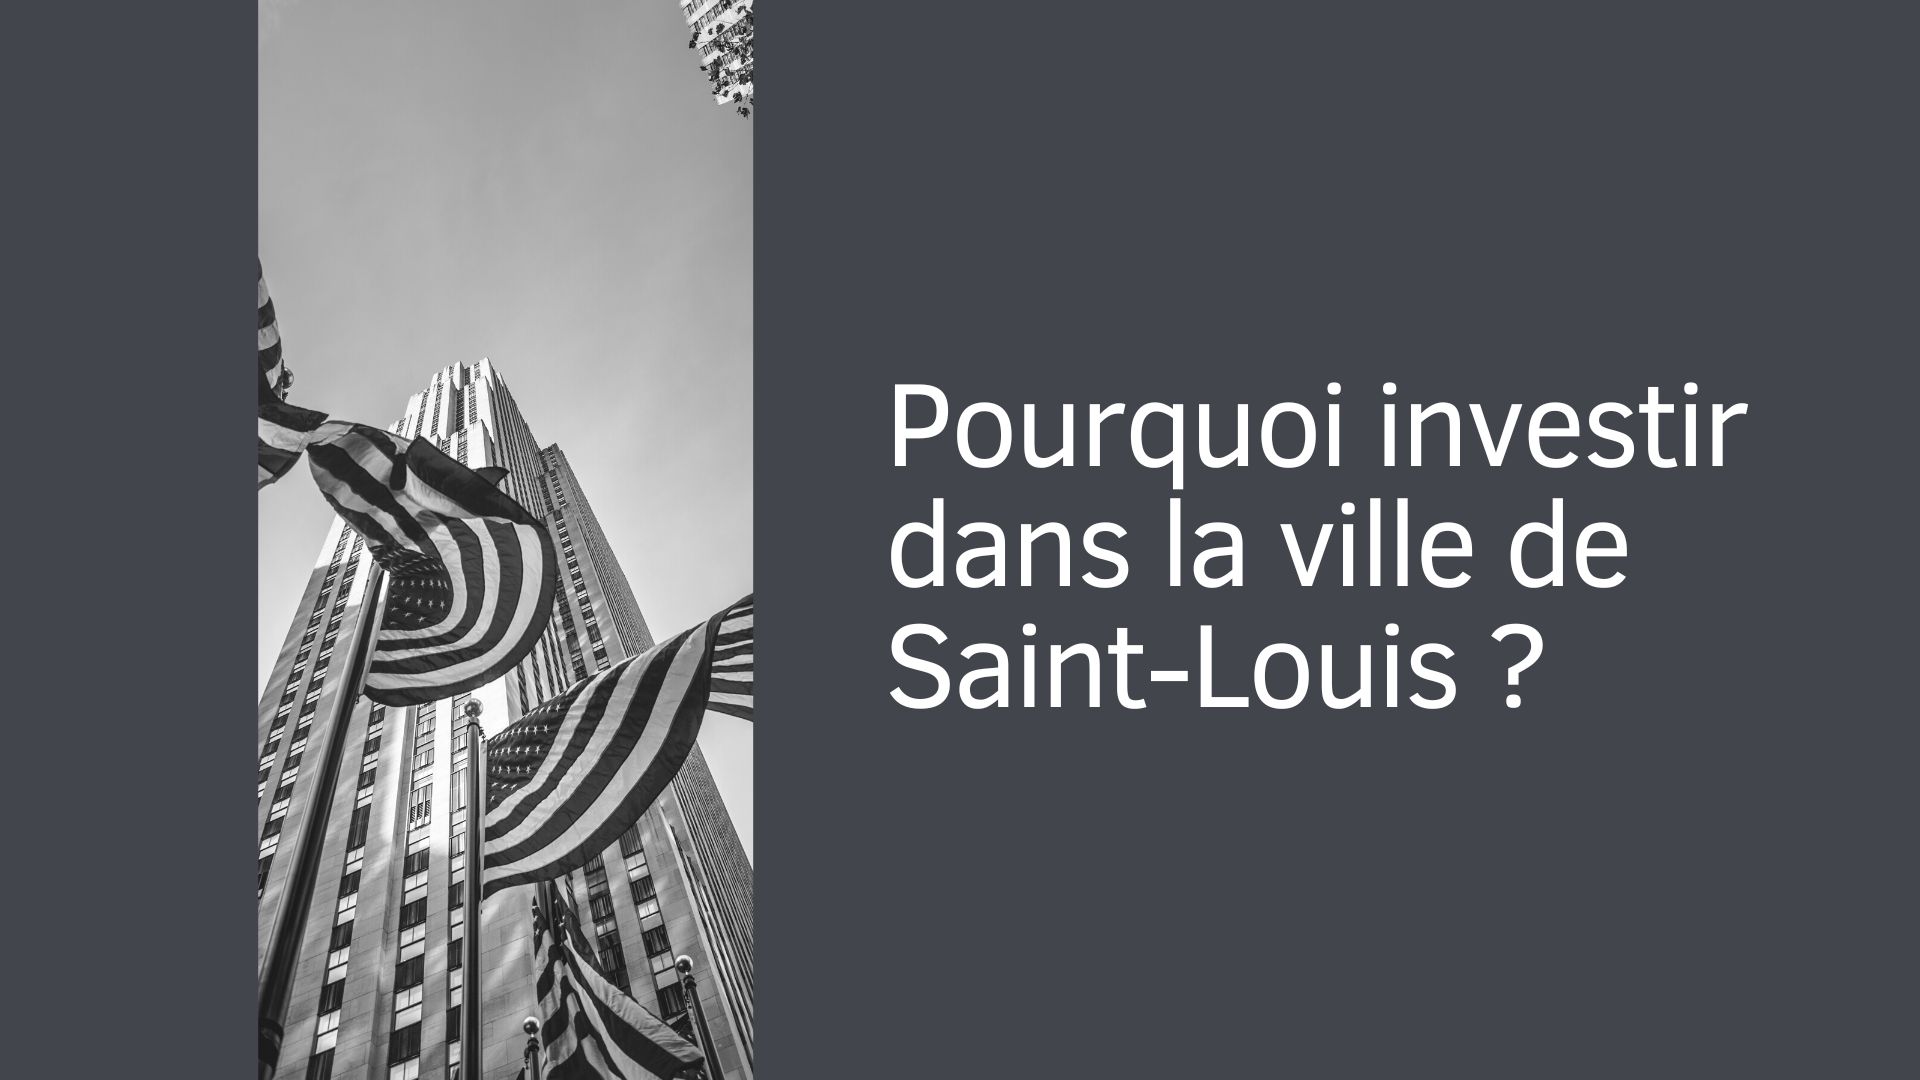 Pourquoi investir dans la ville de Saint-Louis ?